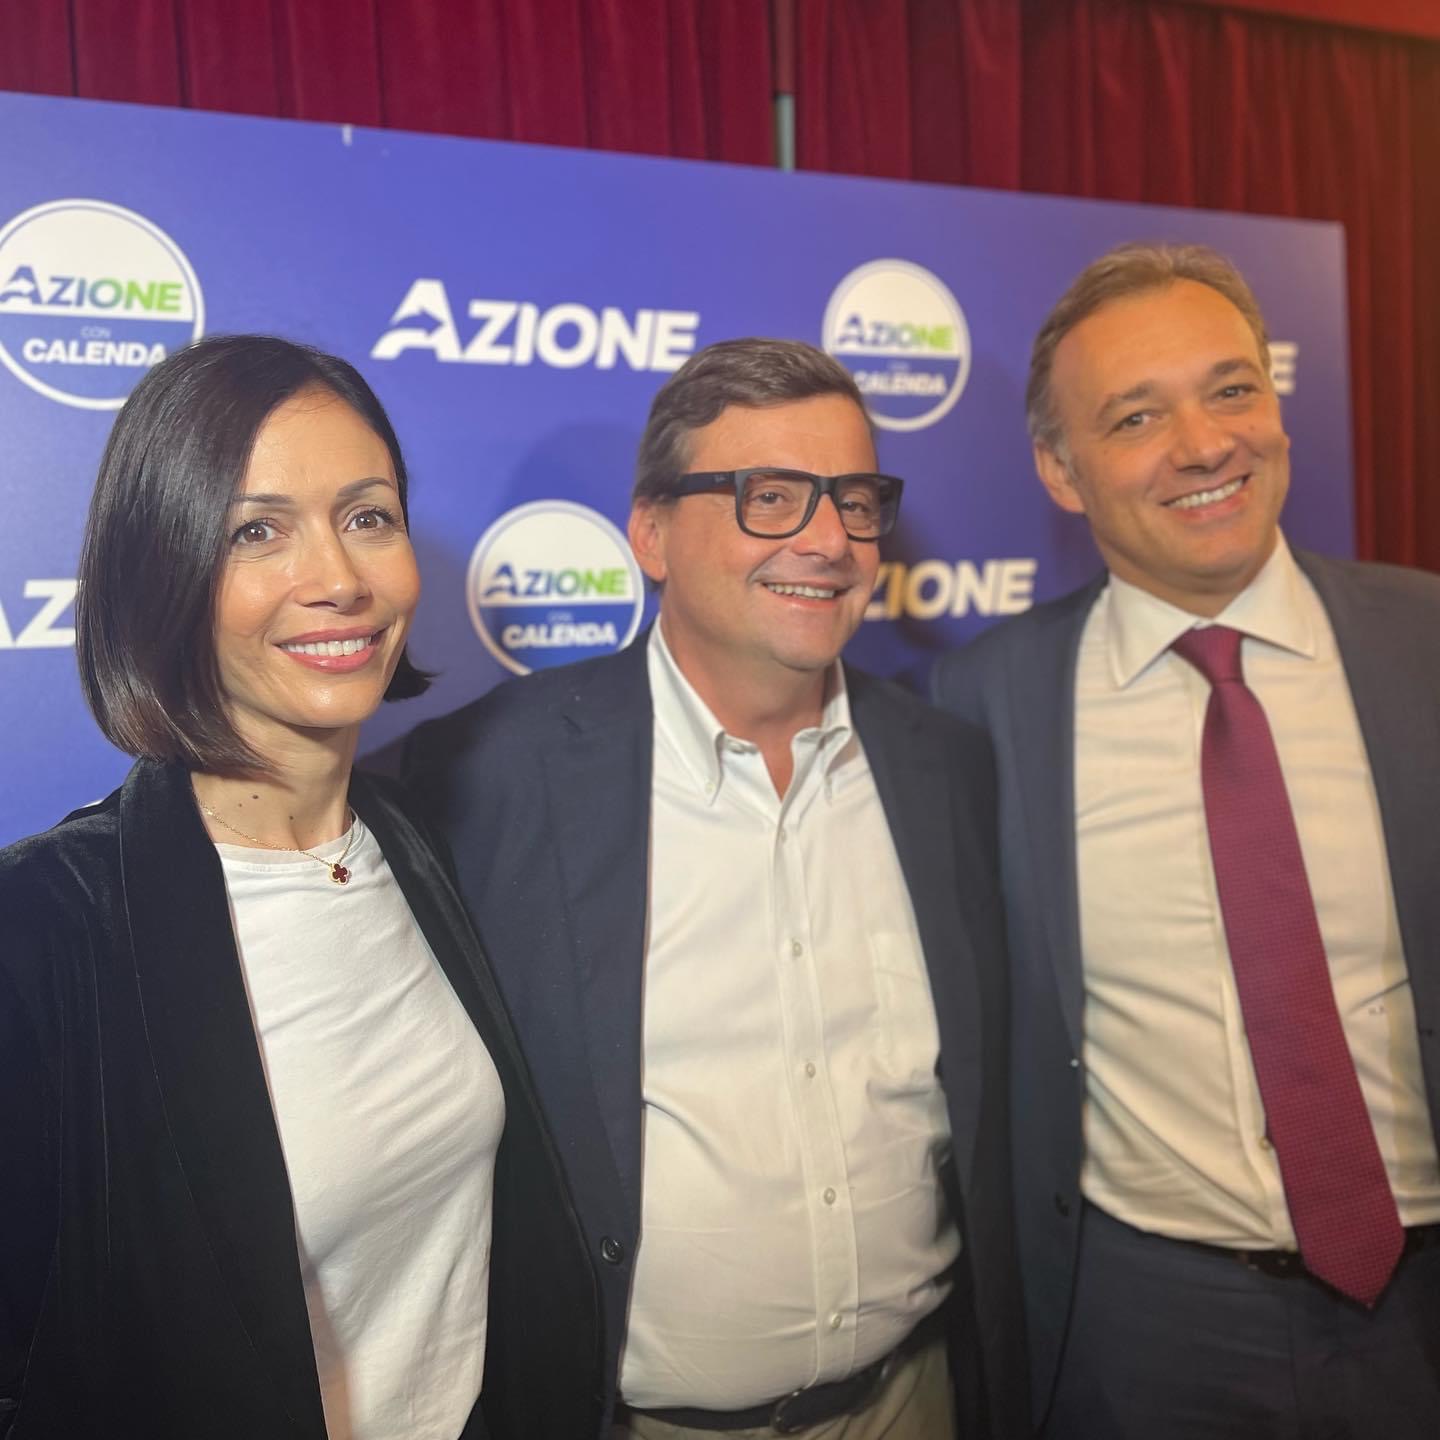 Azione Salerno: ”orgogliosi per Mara Carfagna Presidente, il Sud al centro del nostro impegno”